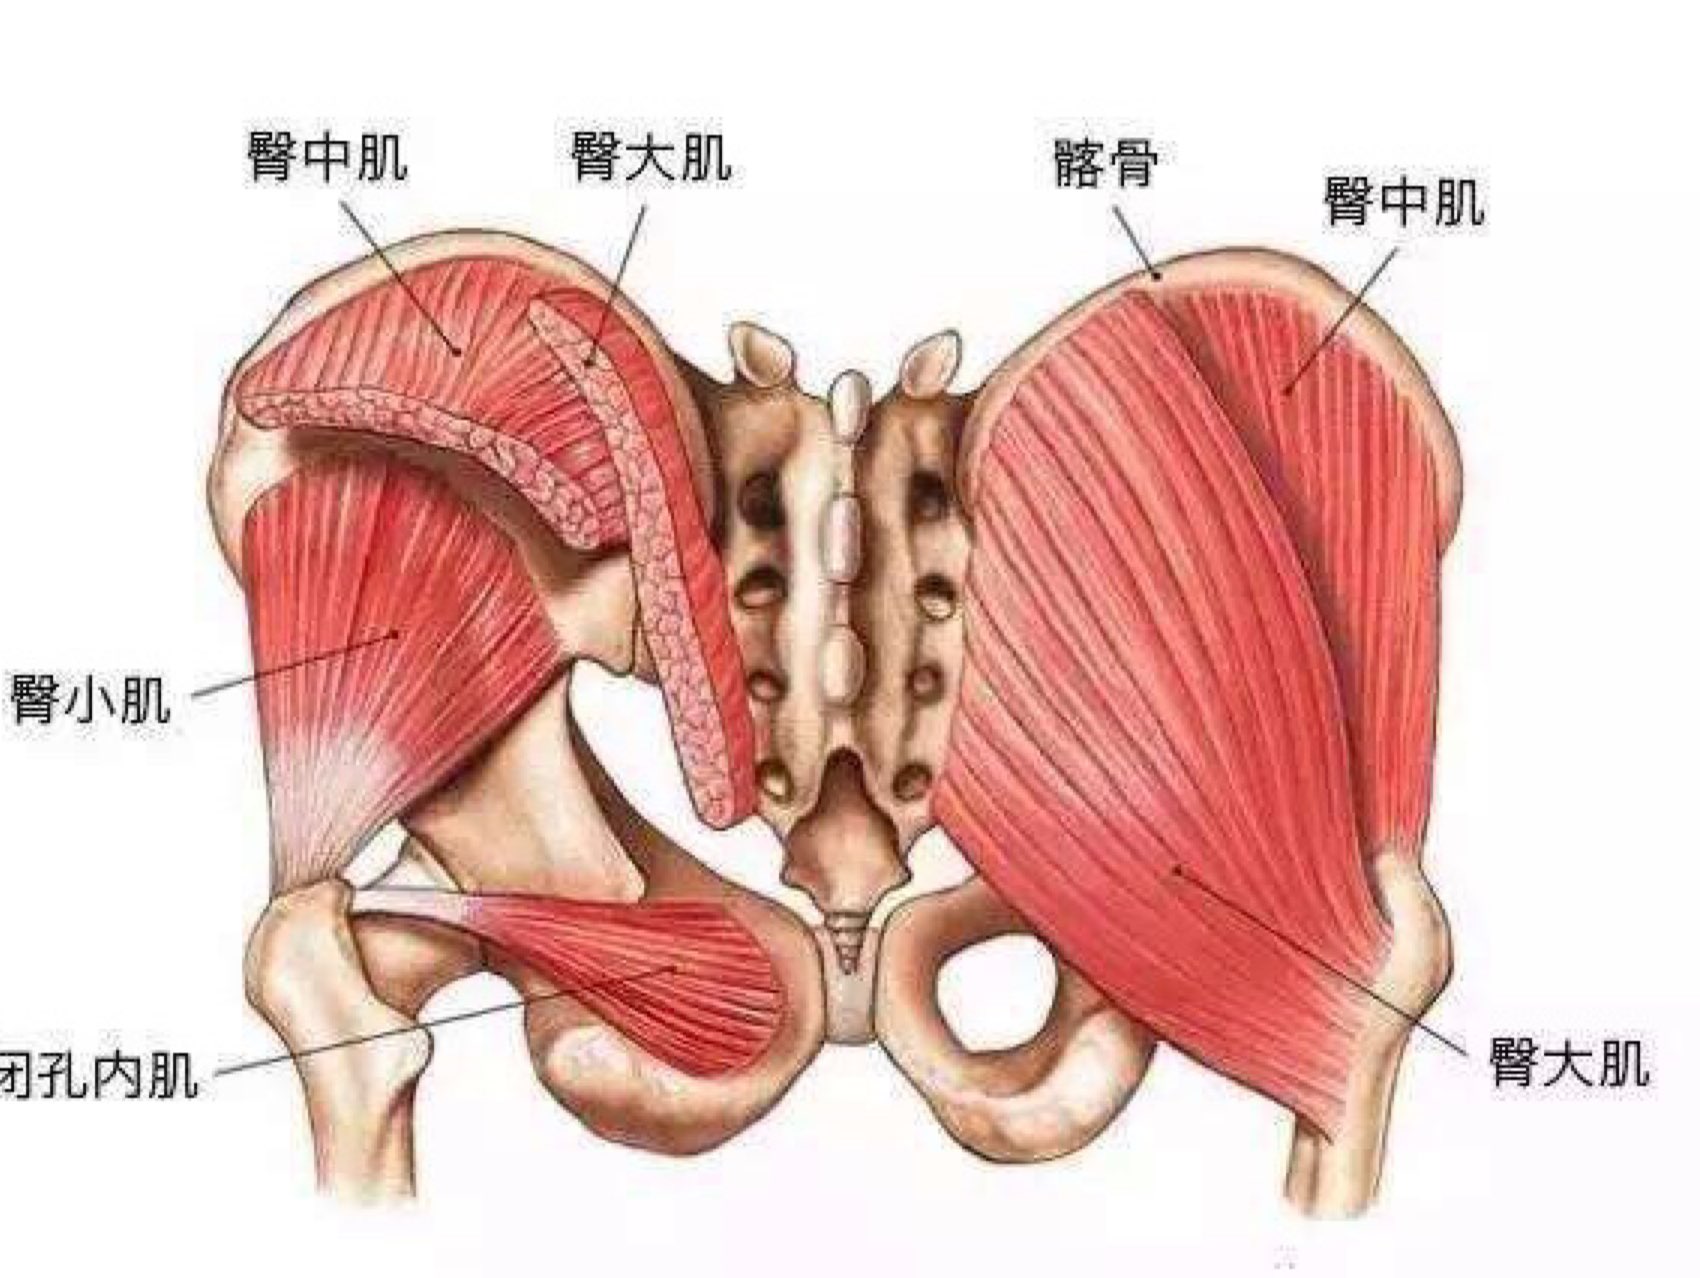 臀部肌肉的重要性:1:臀部肌肉双侧紧致会导致,骨盆的后倾,骨盆后倾会